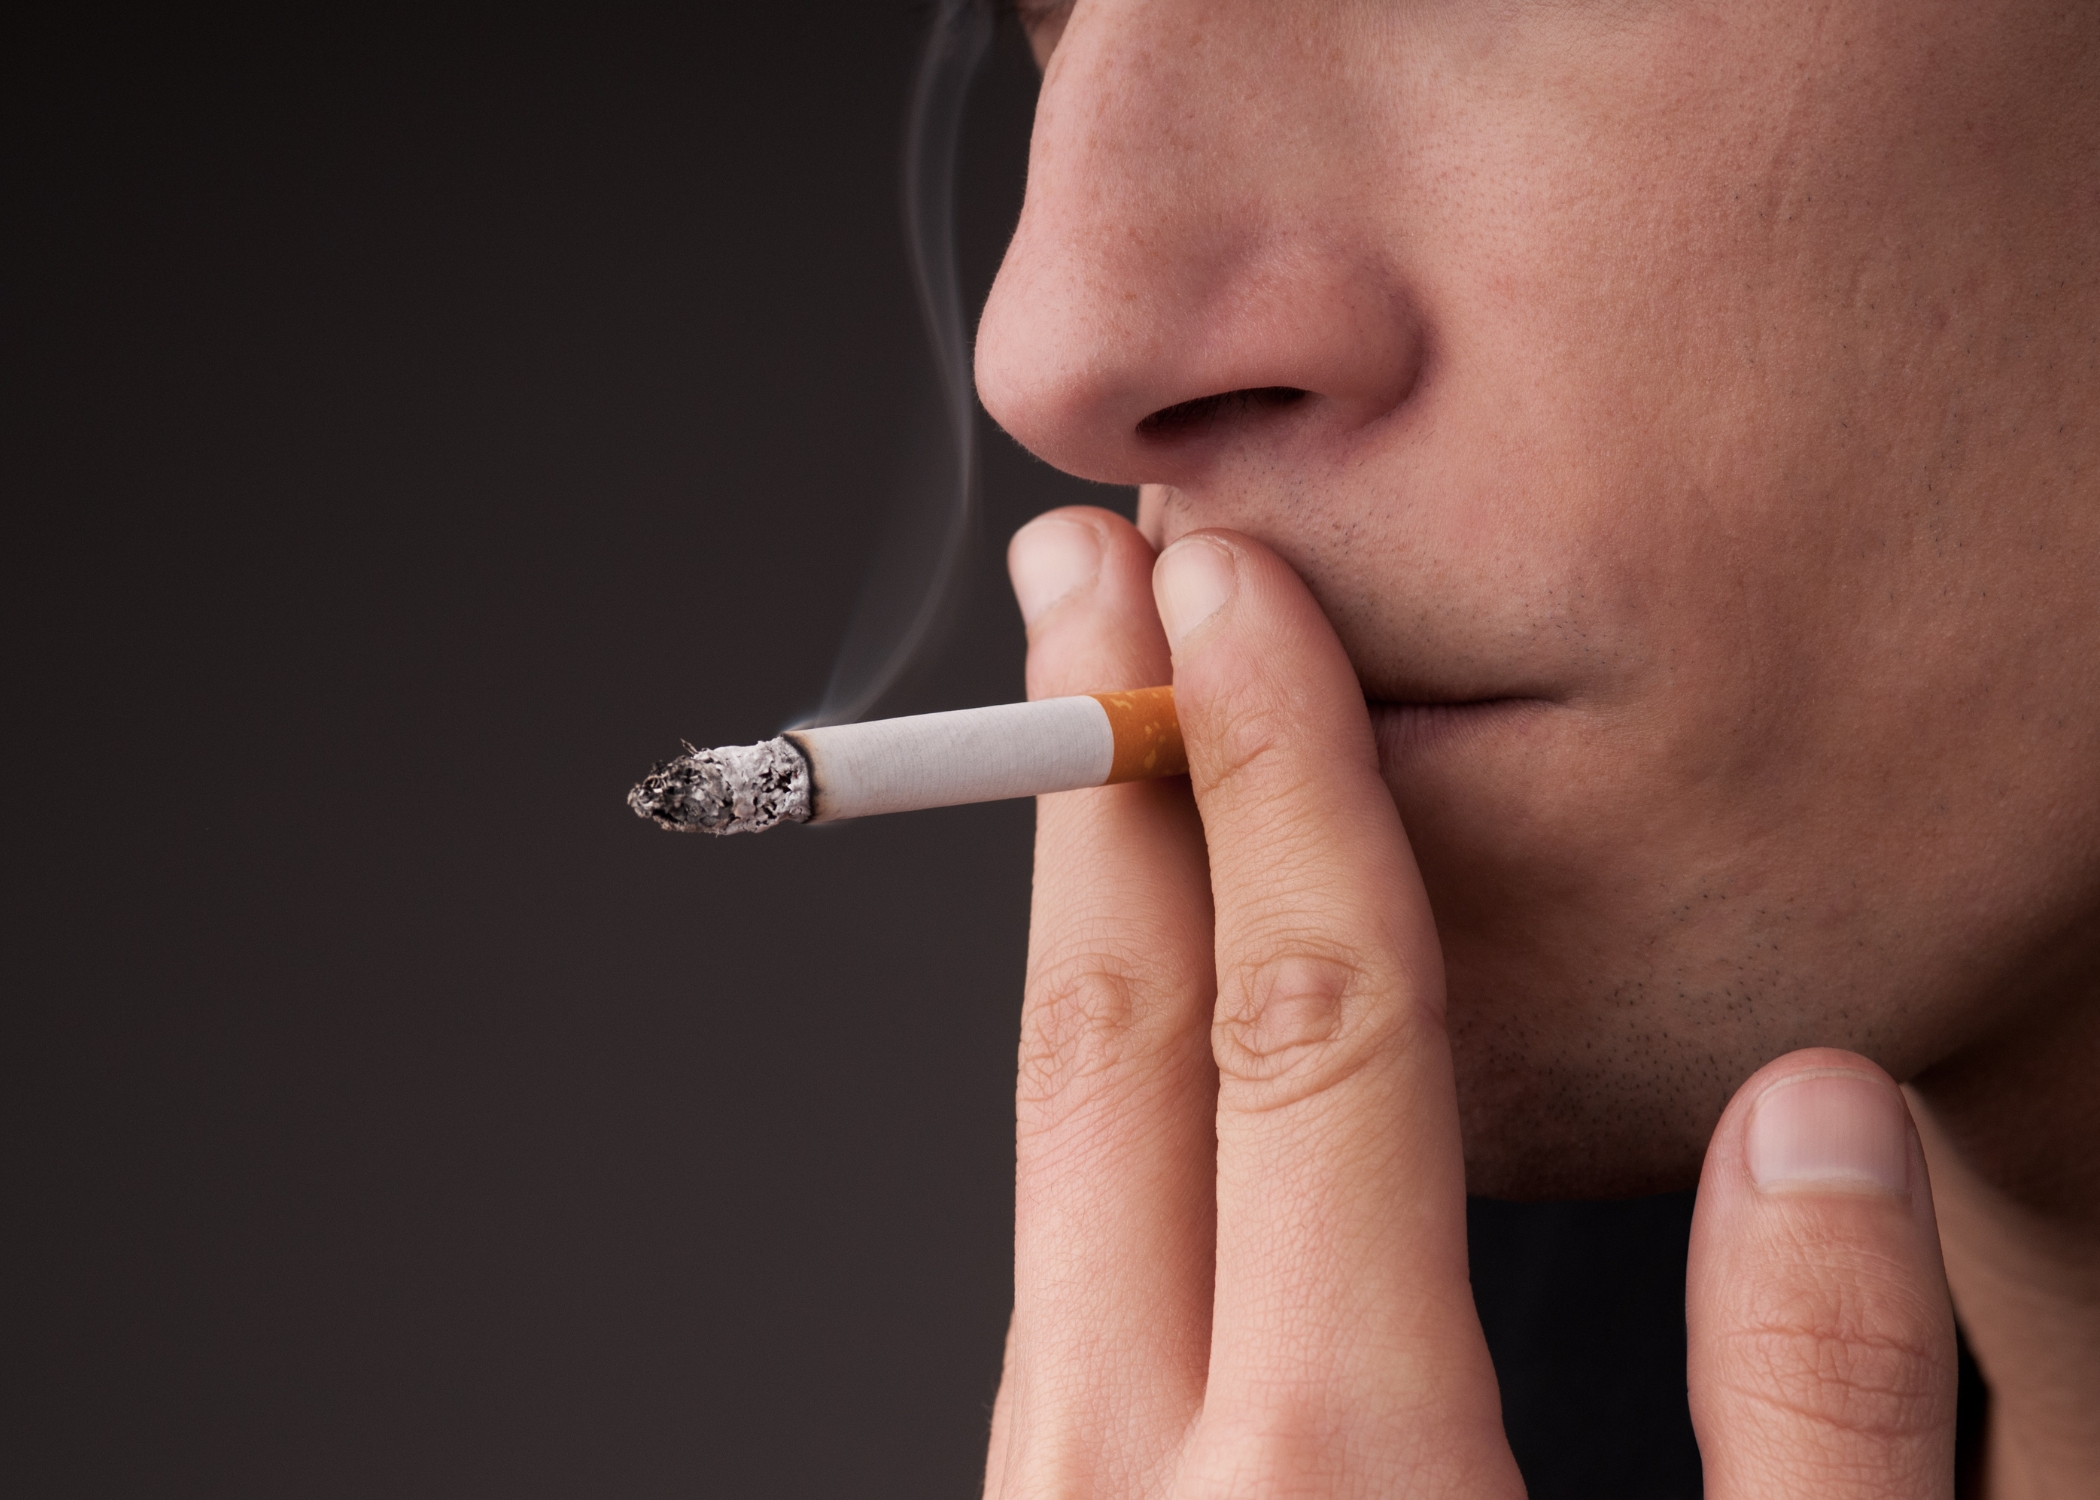 Scopri di più sull'articolo Fumo e impianti dentali: perché smettere di fumare?